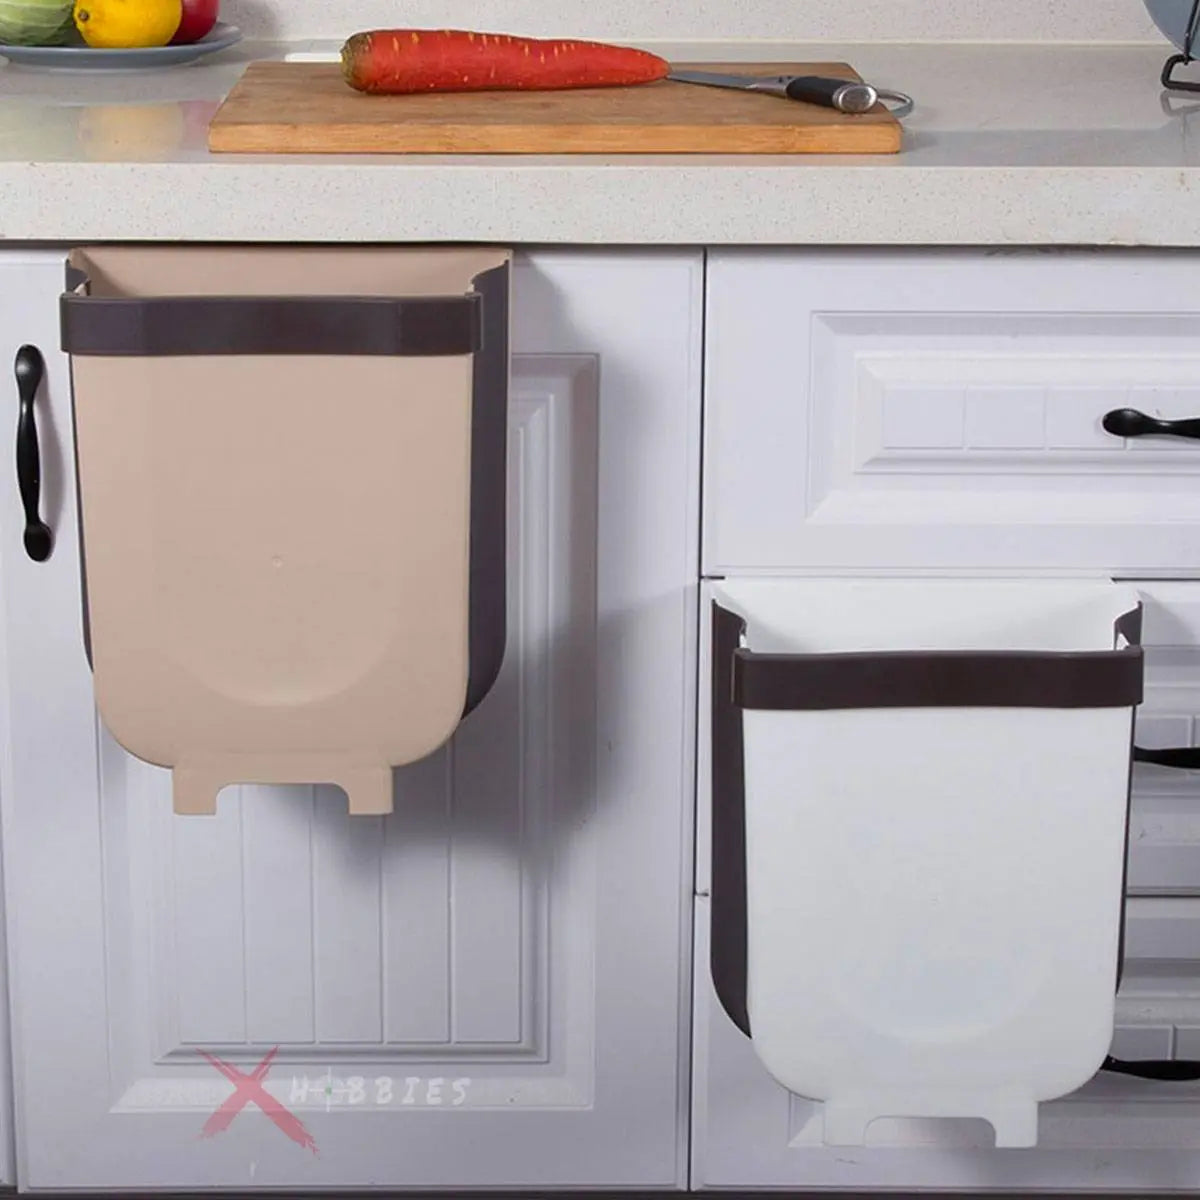 4 Soportes gancho toallero adhesivo para cocina – Xhobbies